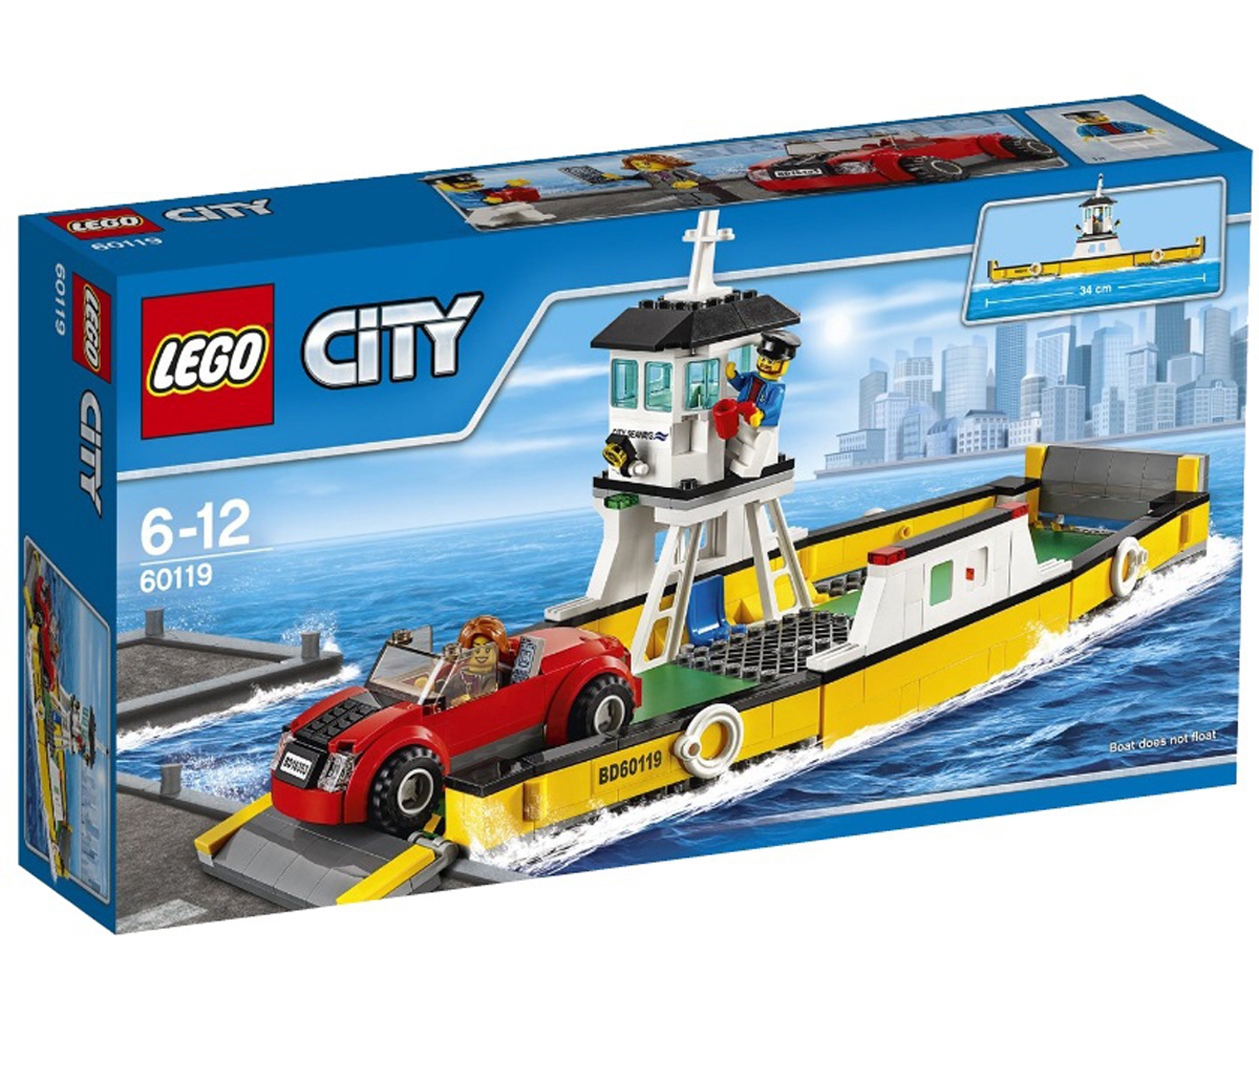 Иллюстрация 1 из 3 для Конструктор LEGO "City. Паром" (60119) | Лабиринт - игрушки. Источник: Лабиринт